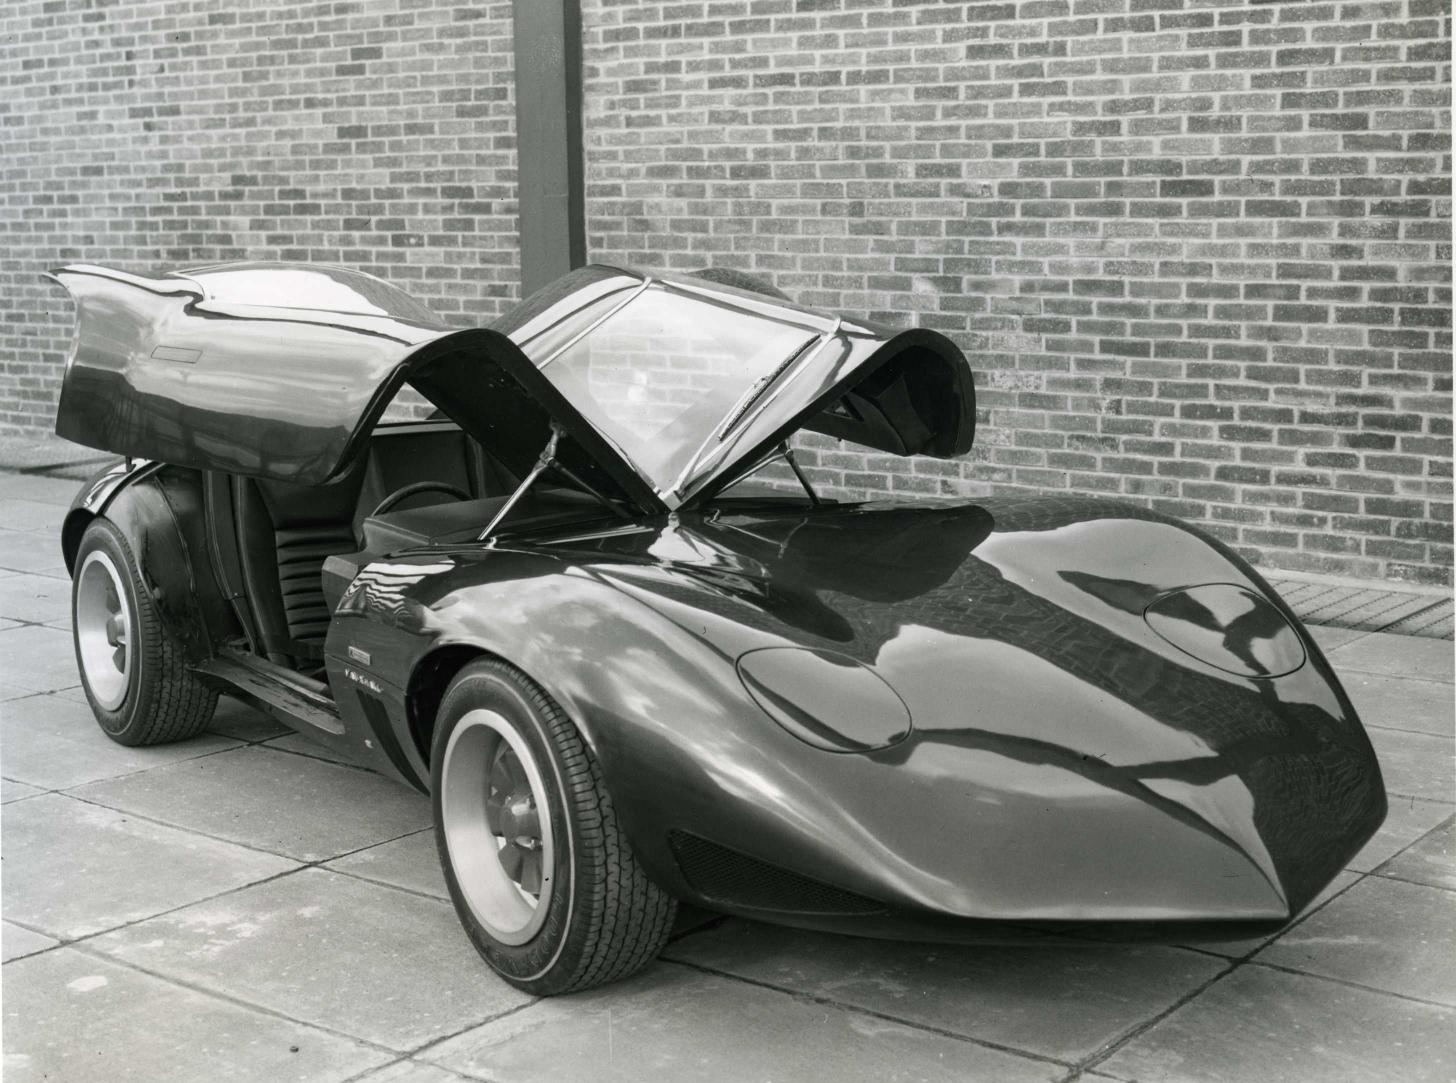 1966 Vauxhall XVR Concept